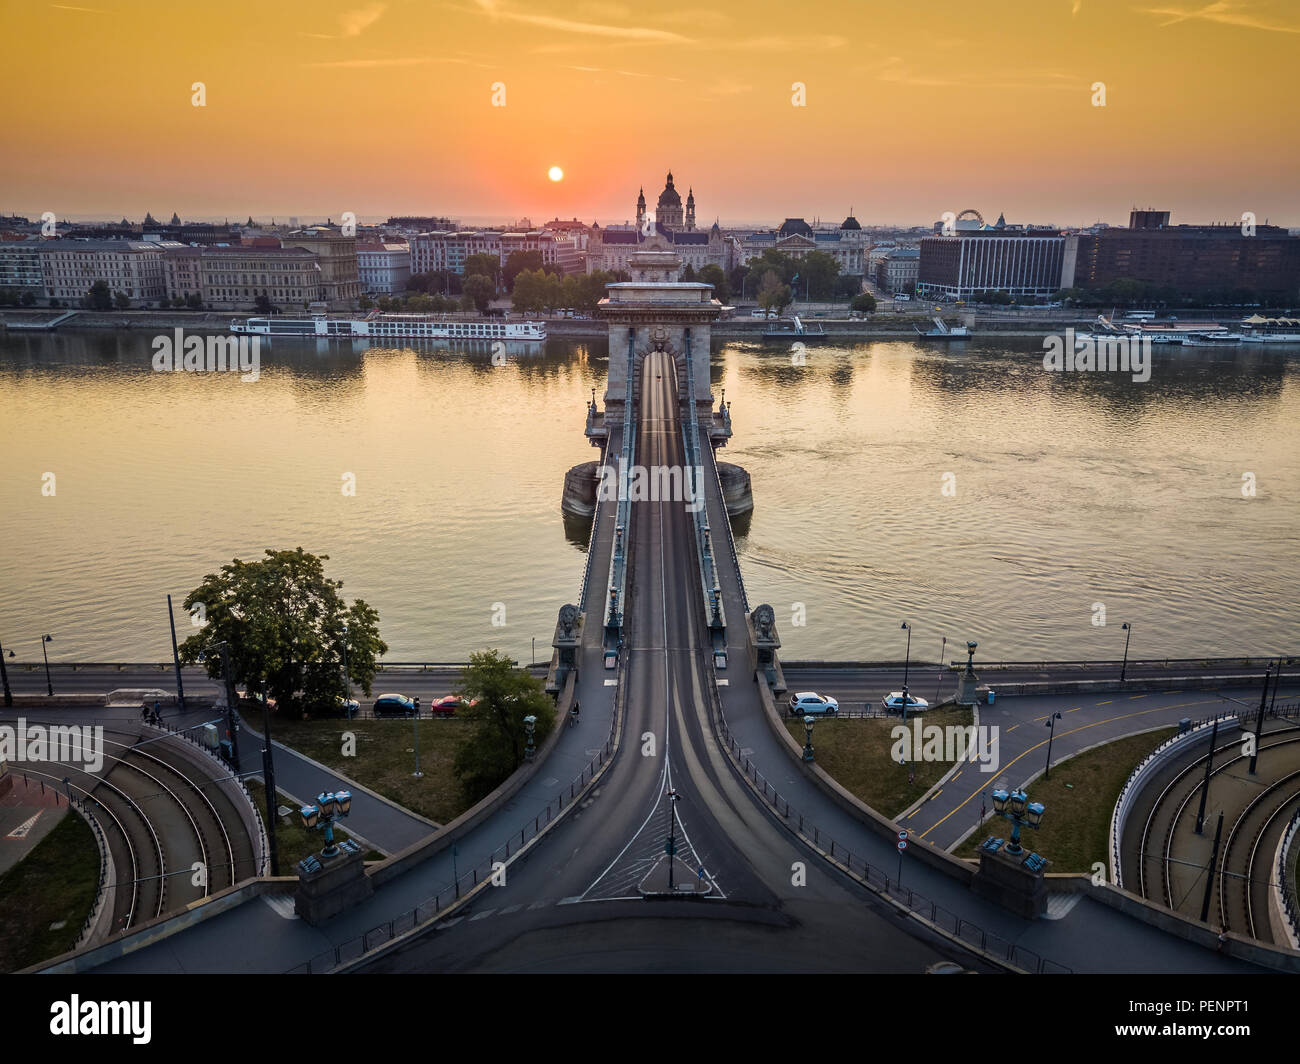 Budapest, Hungría - Amanecer en el famoso Puente de la cadena Szechenyi con basílica de San Esteban en segundo plano Foto de stock